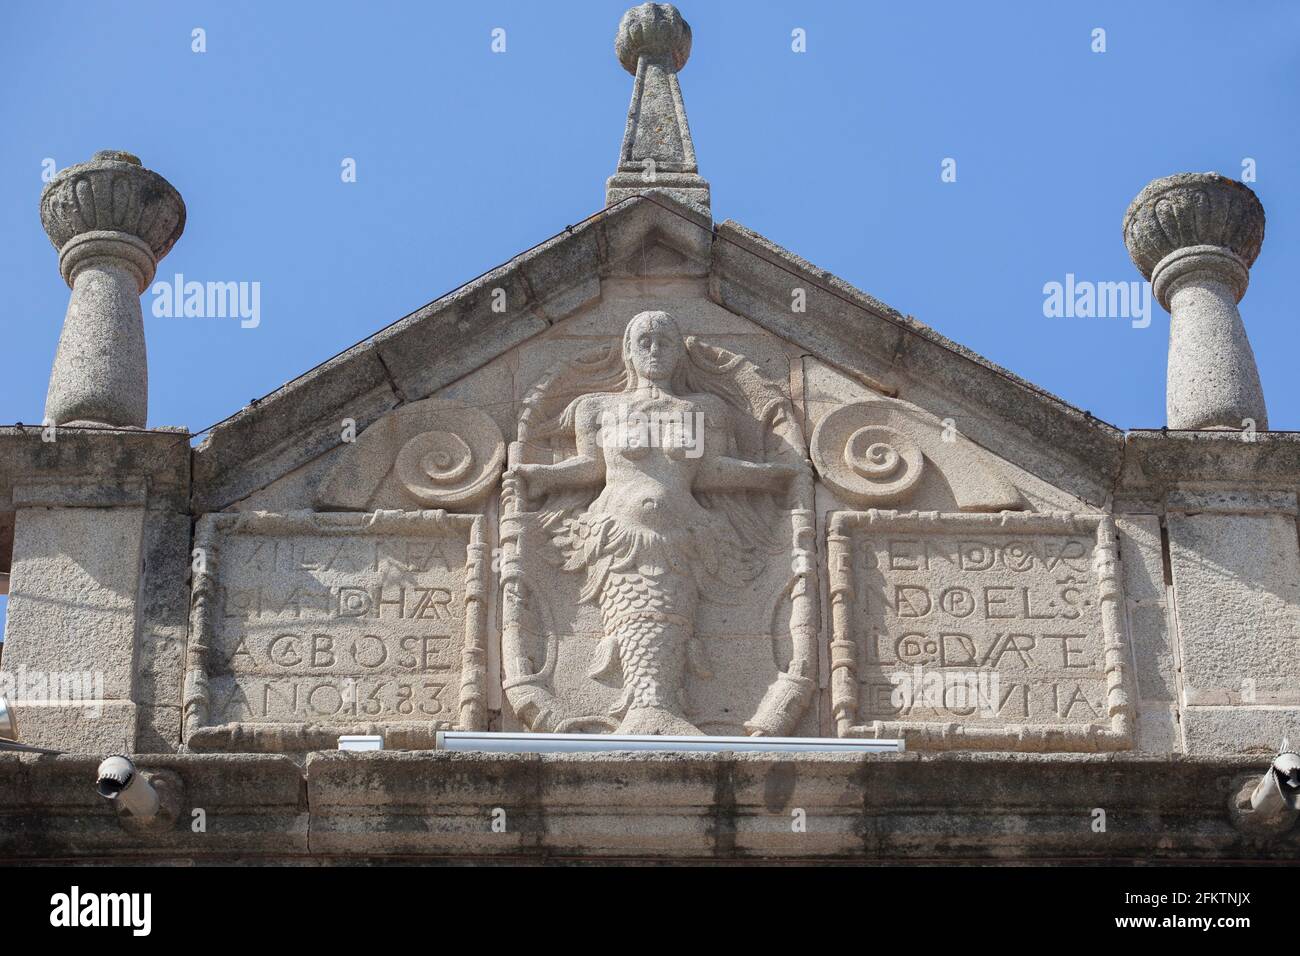 Armoiries avec soulagement de sirène à Villanueva de la Serena, Badajoz, Espagne. Cette créature mythologique est le symbole du village. Banque D'Images